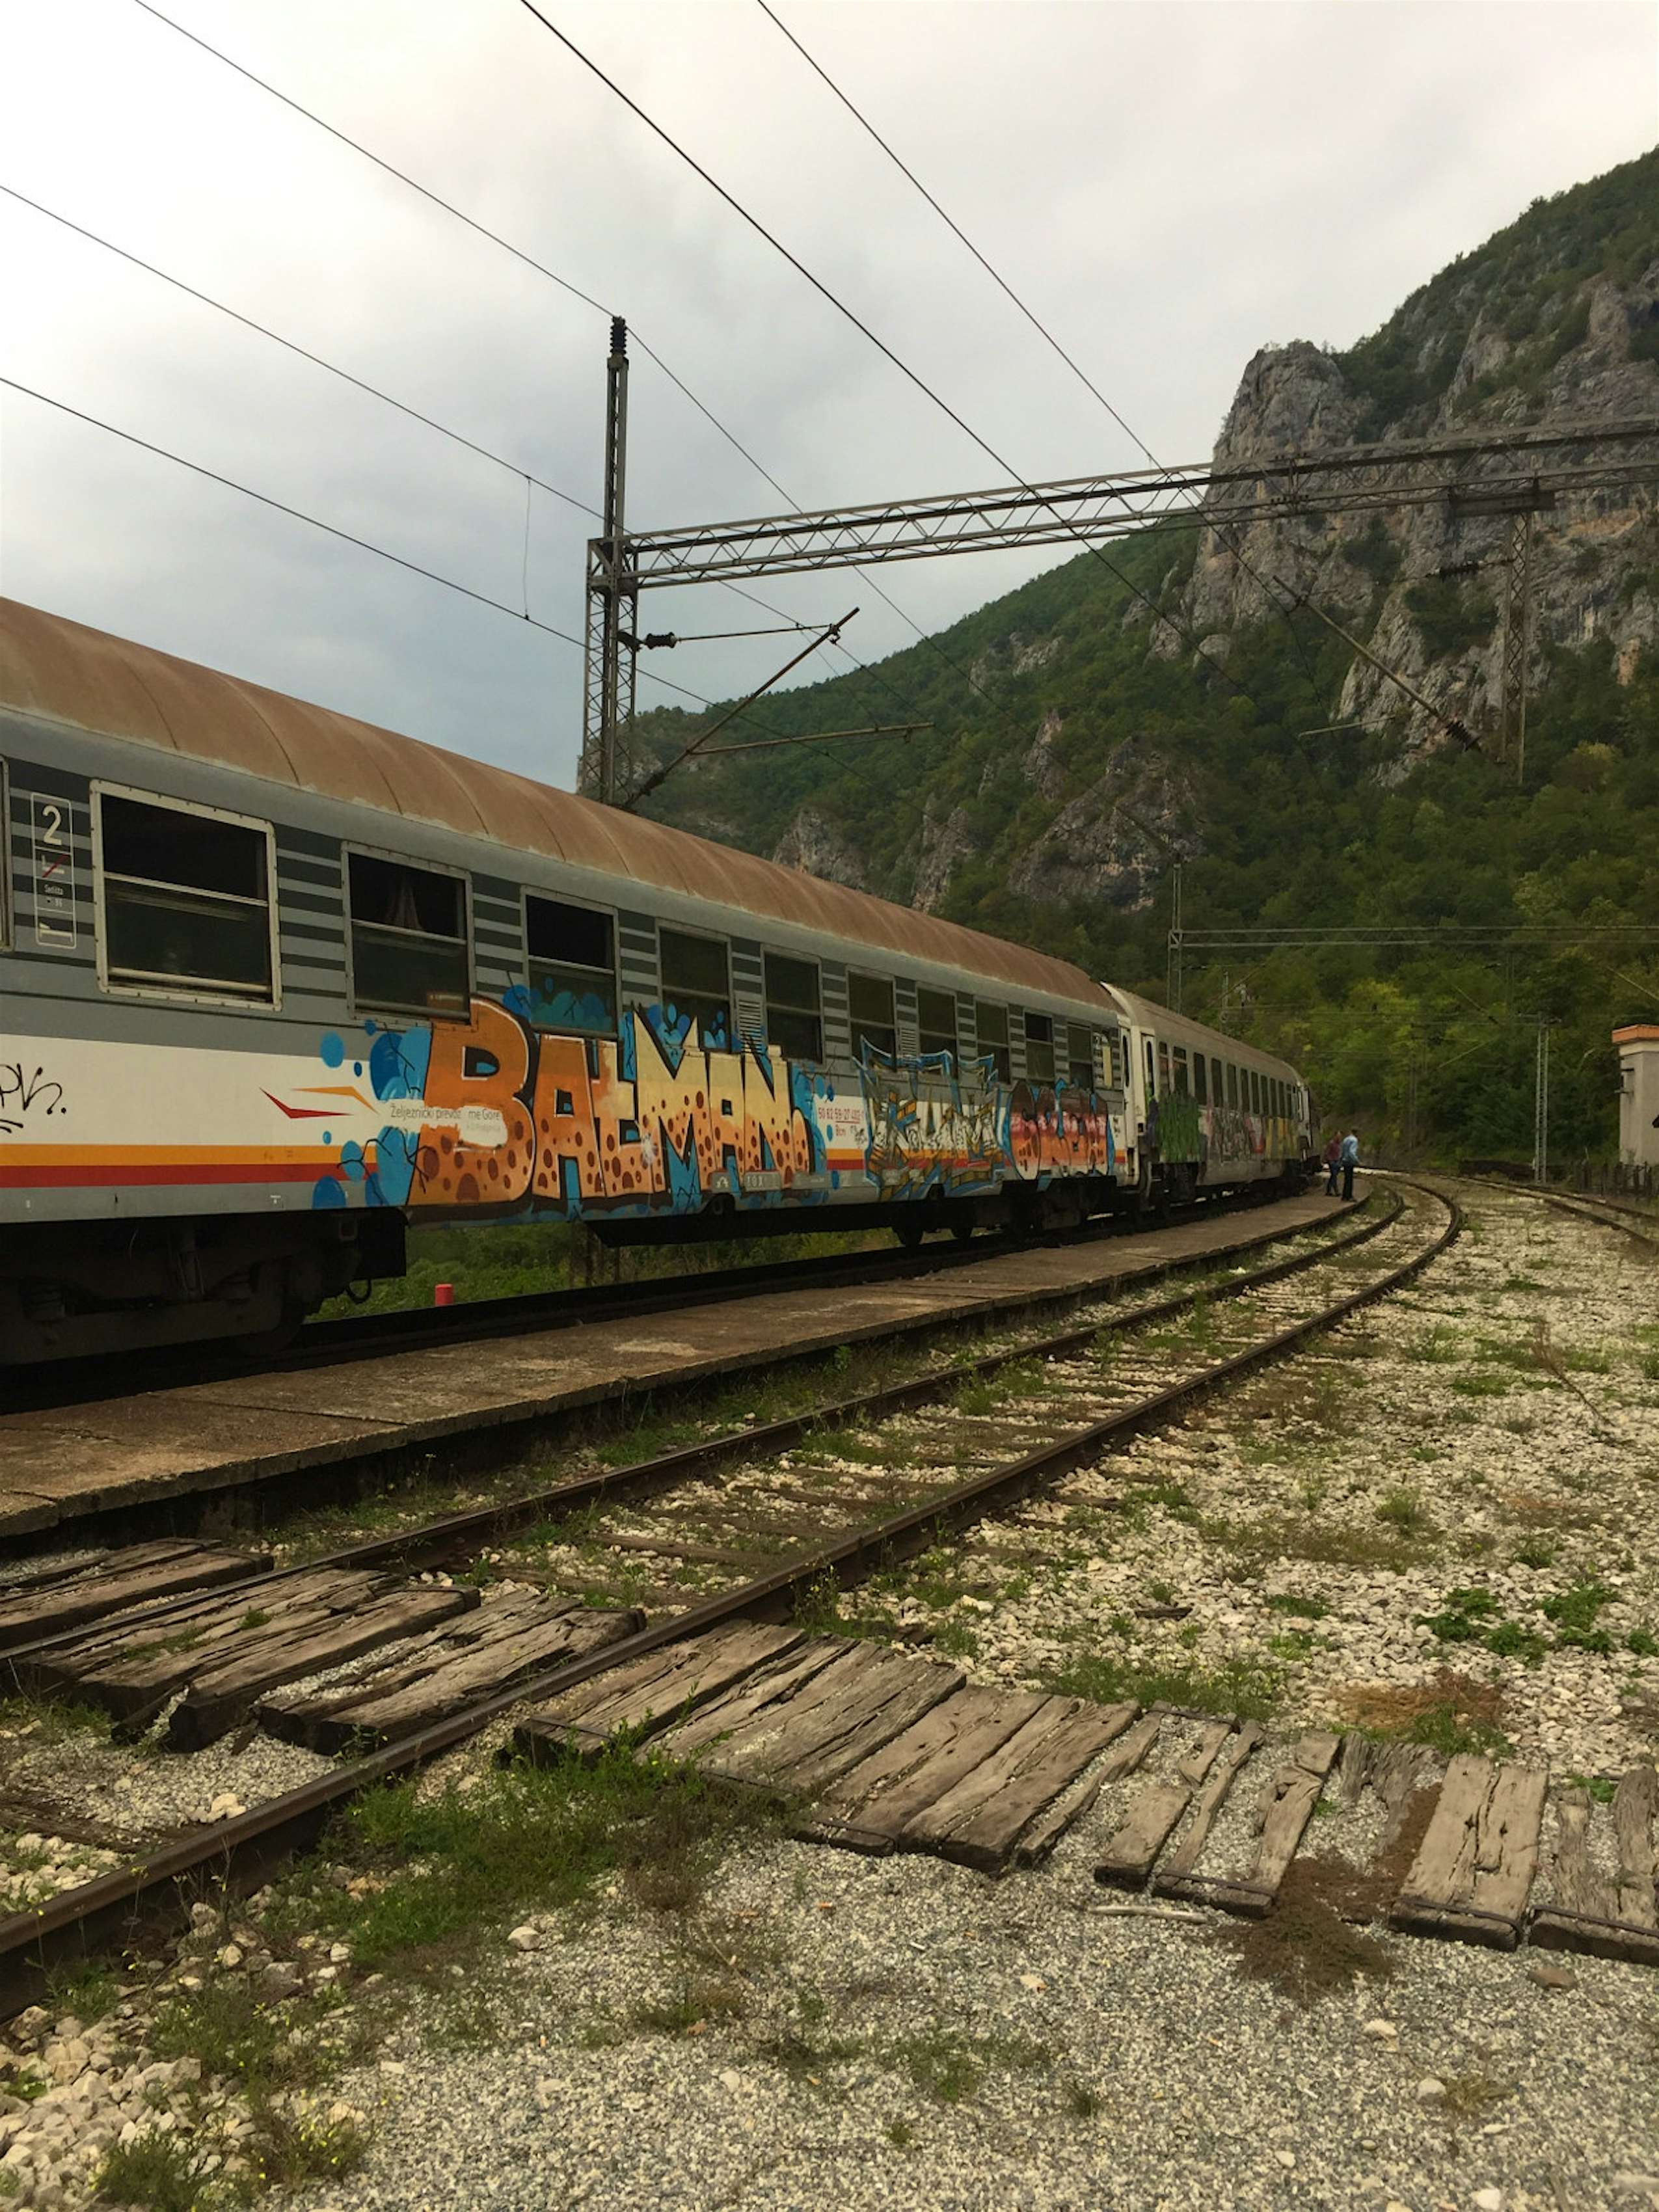 balkans train tour